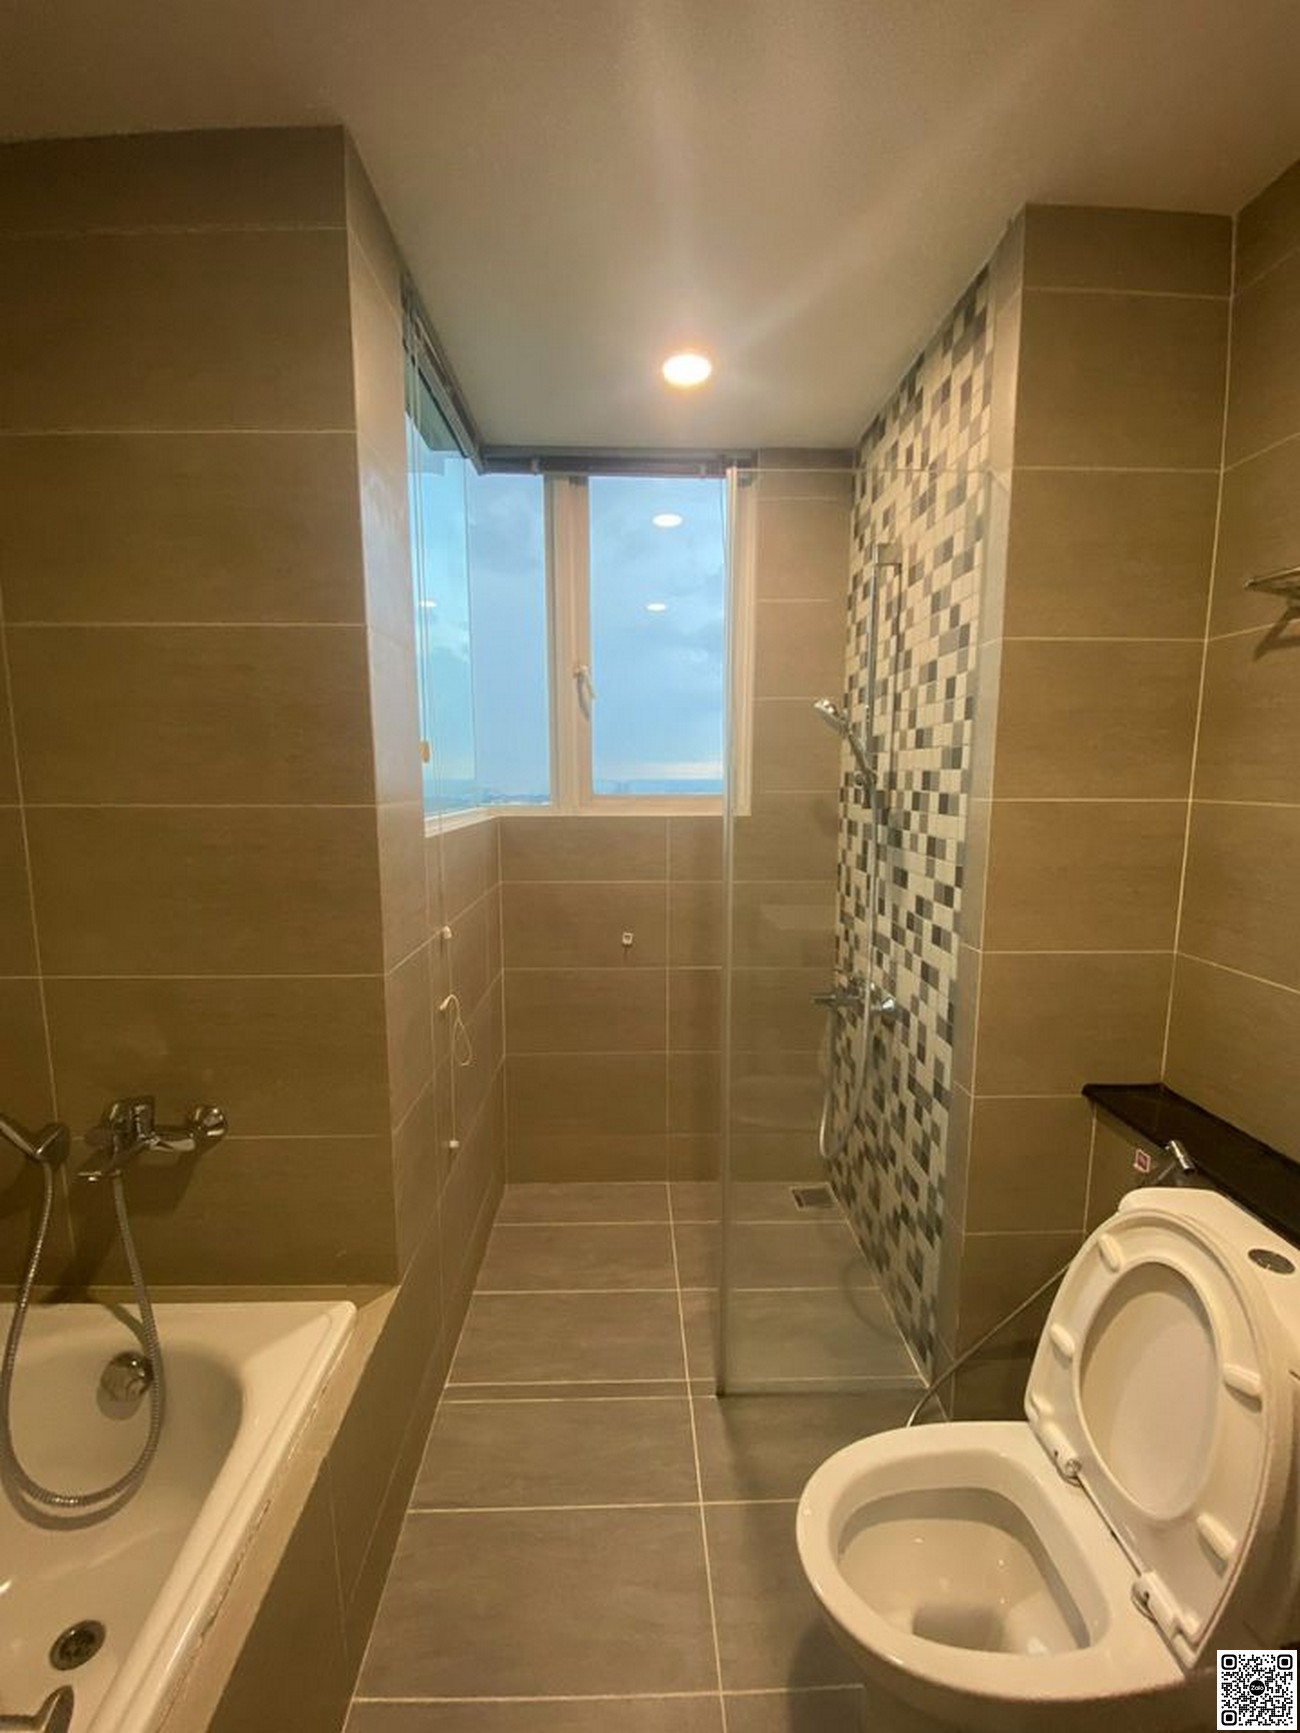 Hình ảnh thực tế nhà vệ sinh căn hộ 120m2 Vista Verde Quận 2.